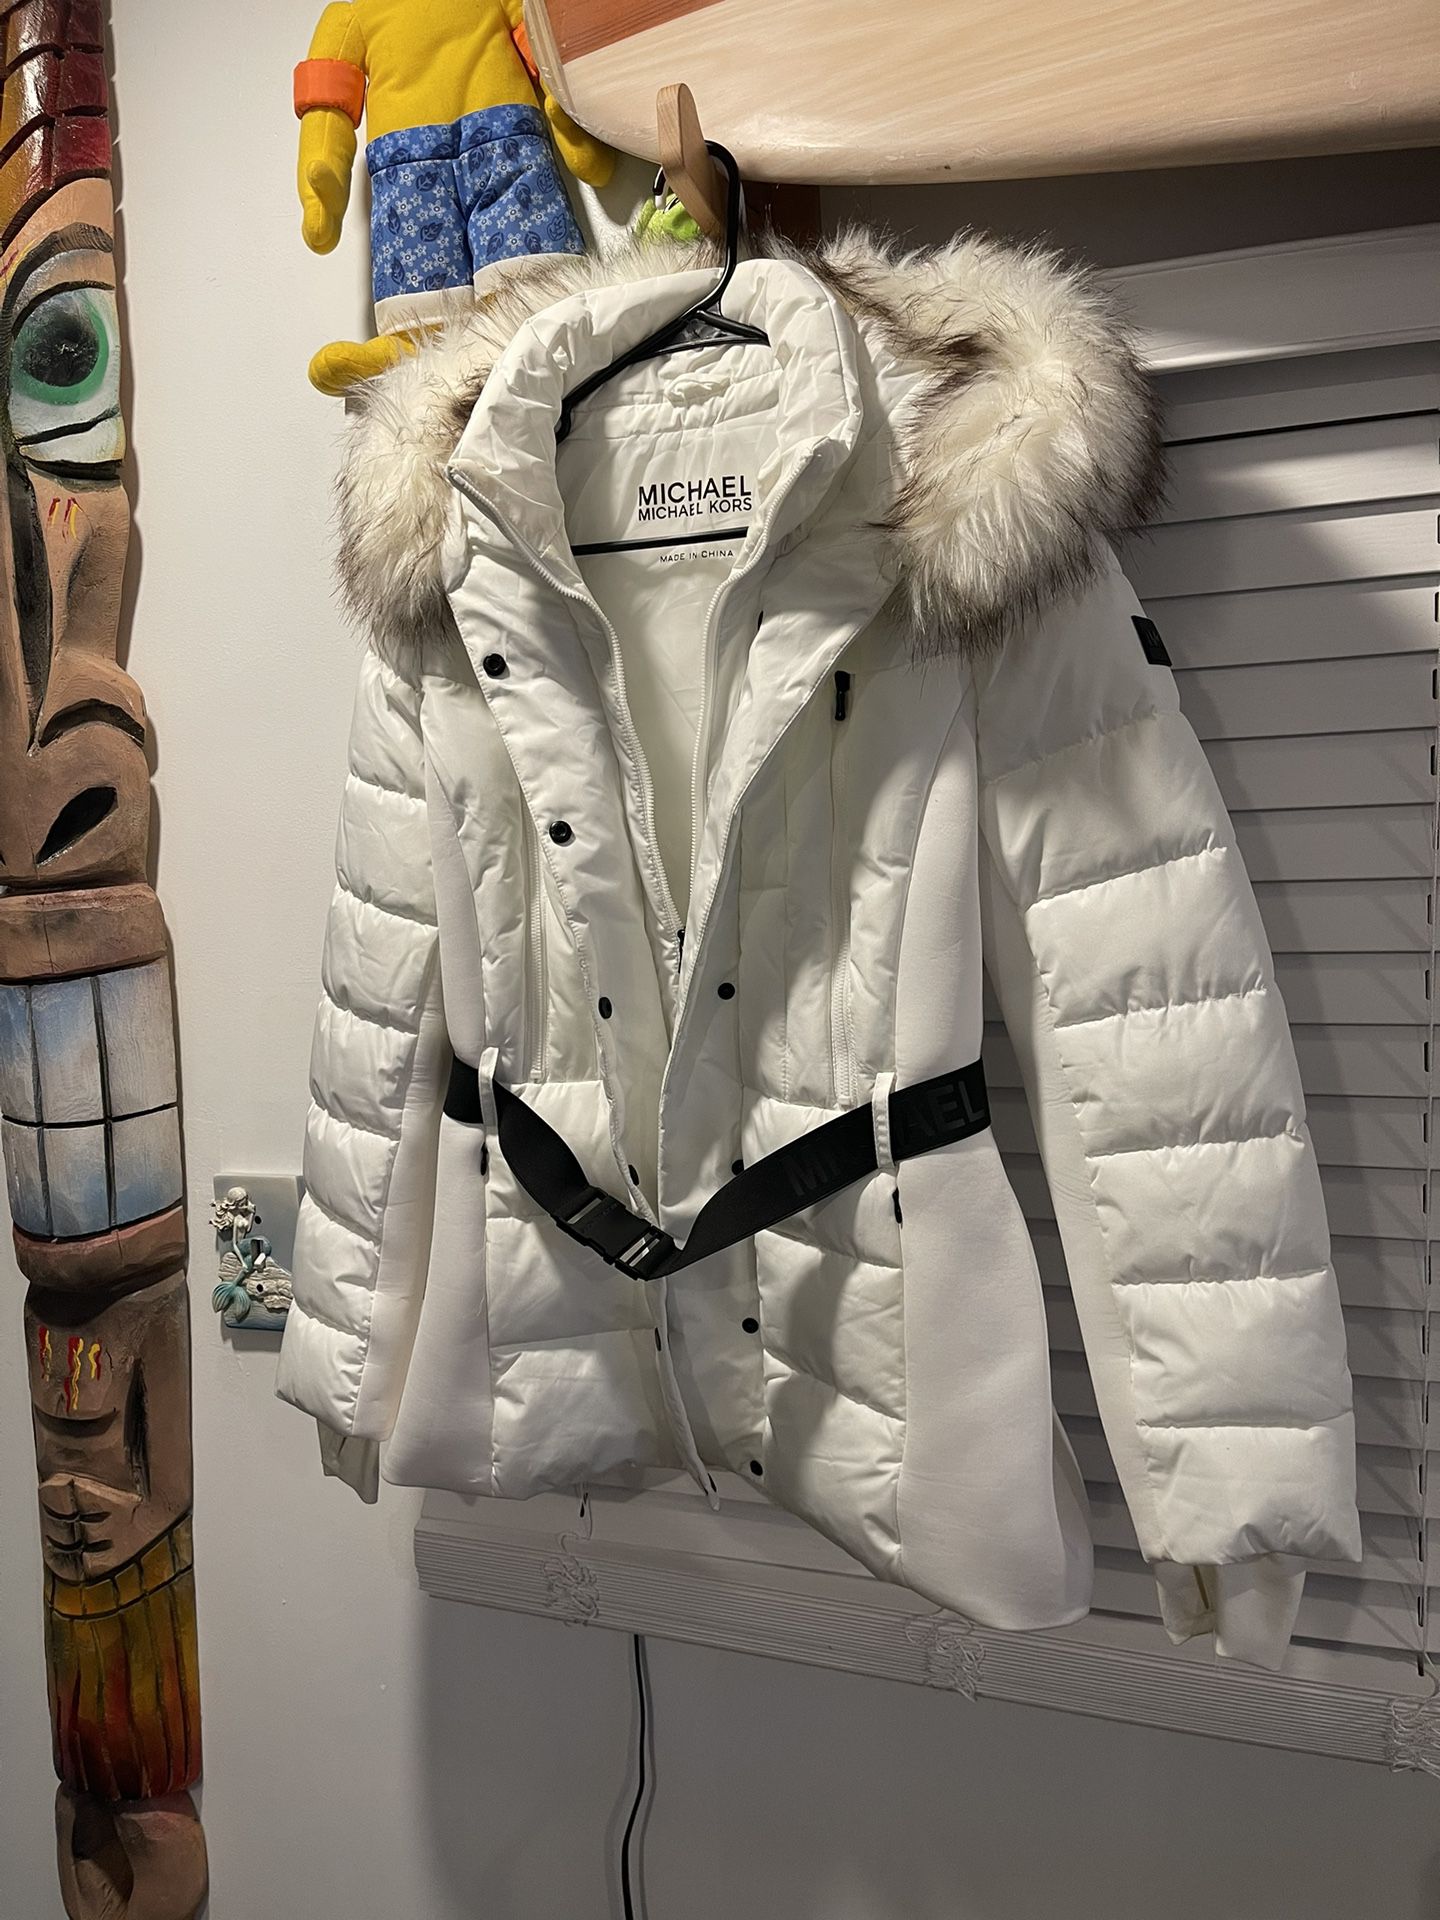 Michael Kors, Women’s Jacket, White Polar Parka Size L Excellent Condition 